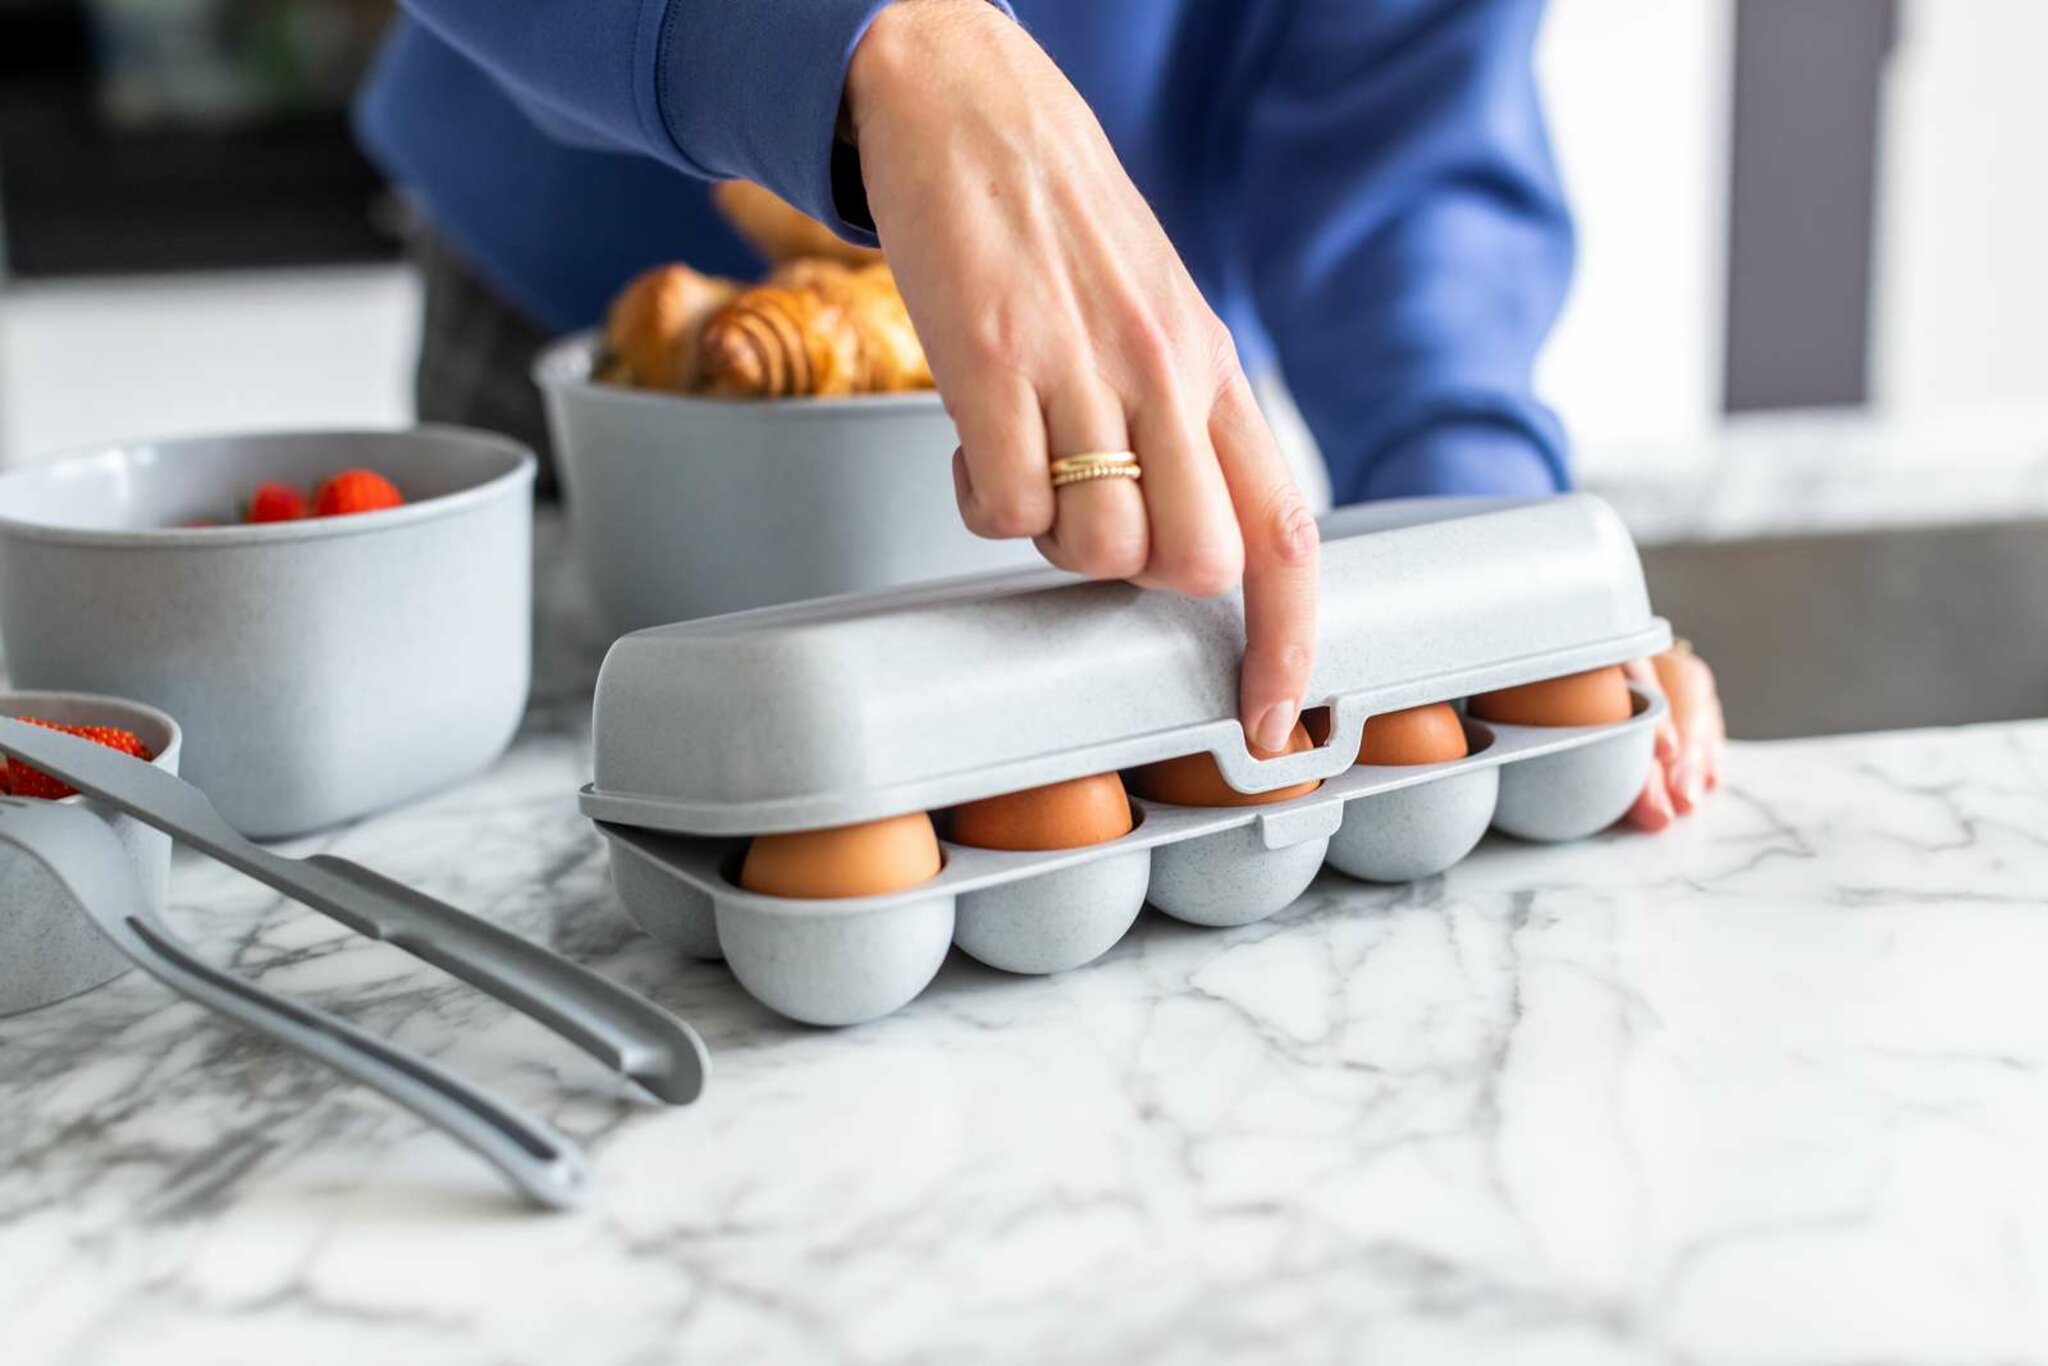 Eggs To Go Äggkartong För 10 Ägg, cooton white